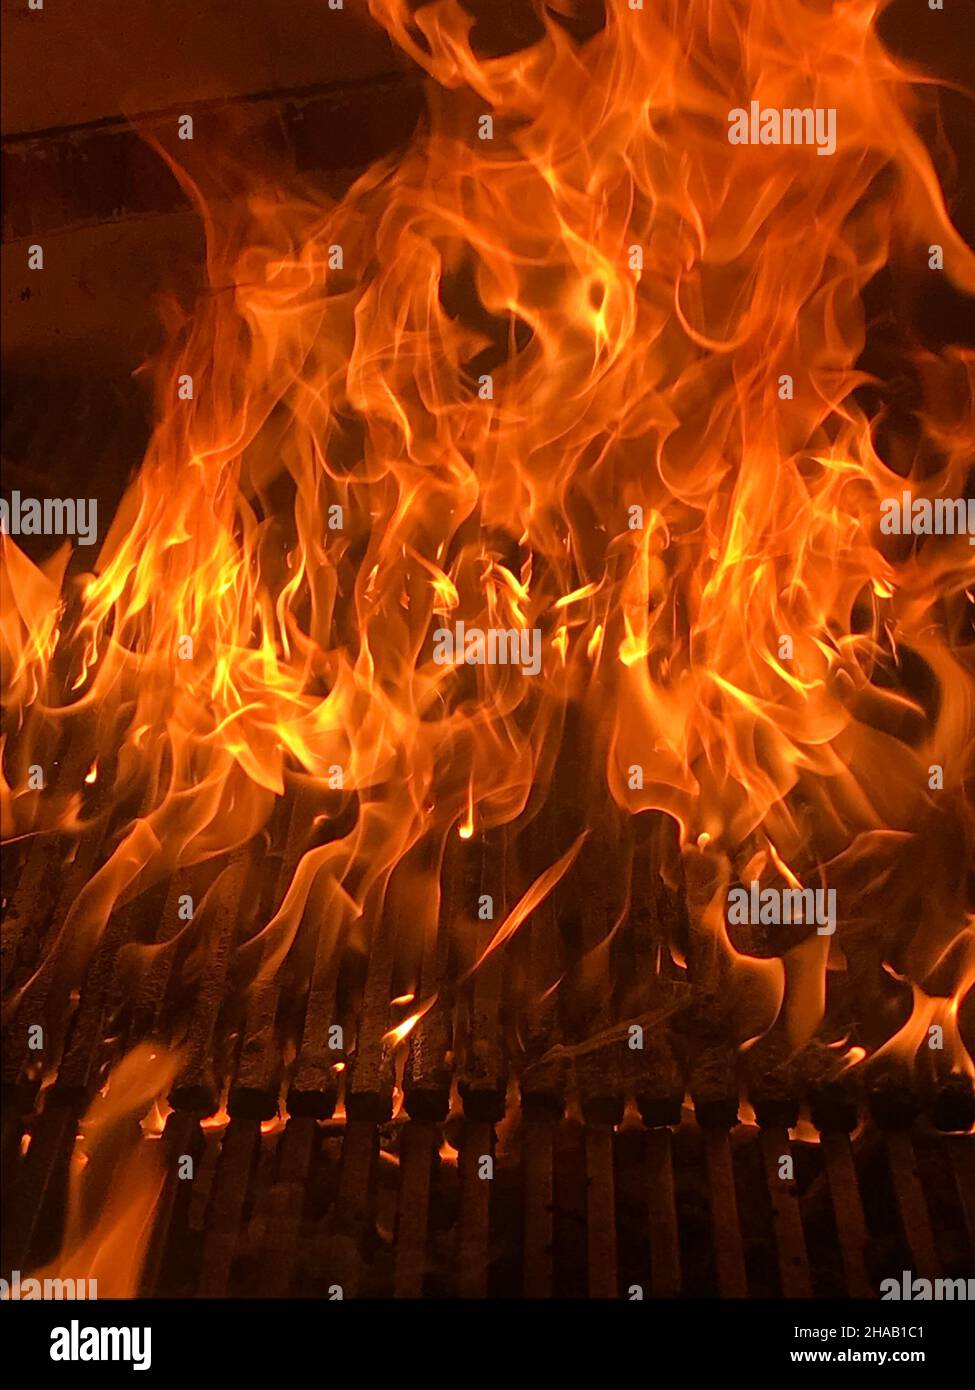 Brennender Kamin mit Feuerflammen auf schwarzem Hintergrund. Flammen brennen in einem Holzfeuer. Stockfoto